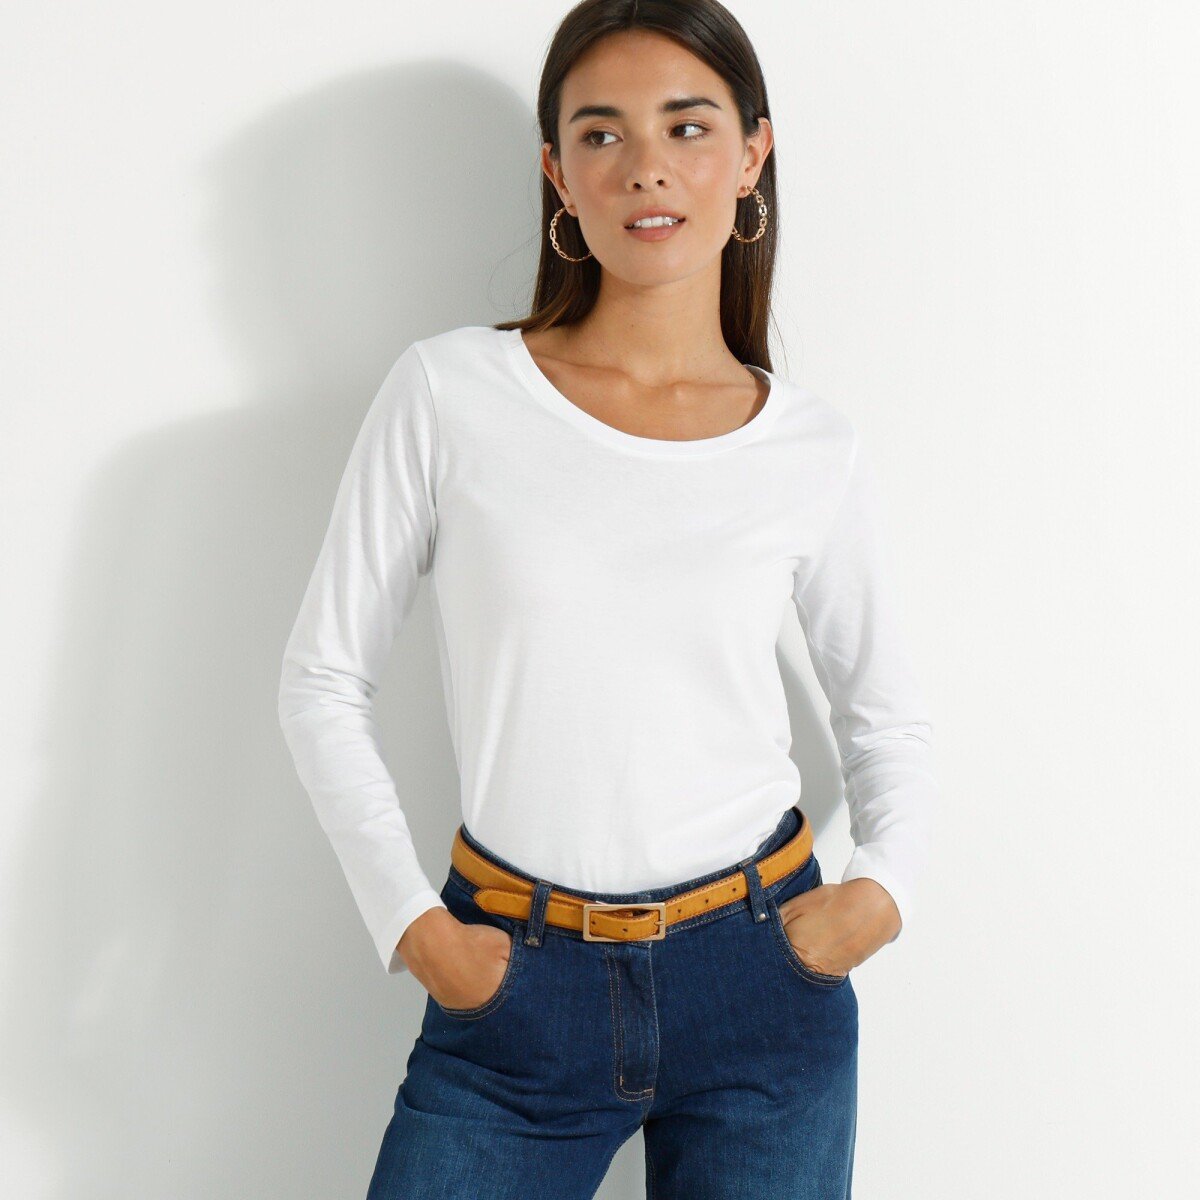 Jednofarebné tričko s dlhými rukávmi biela 34 36